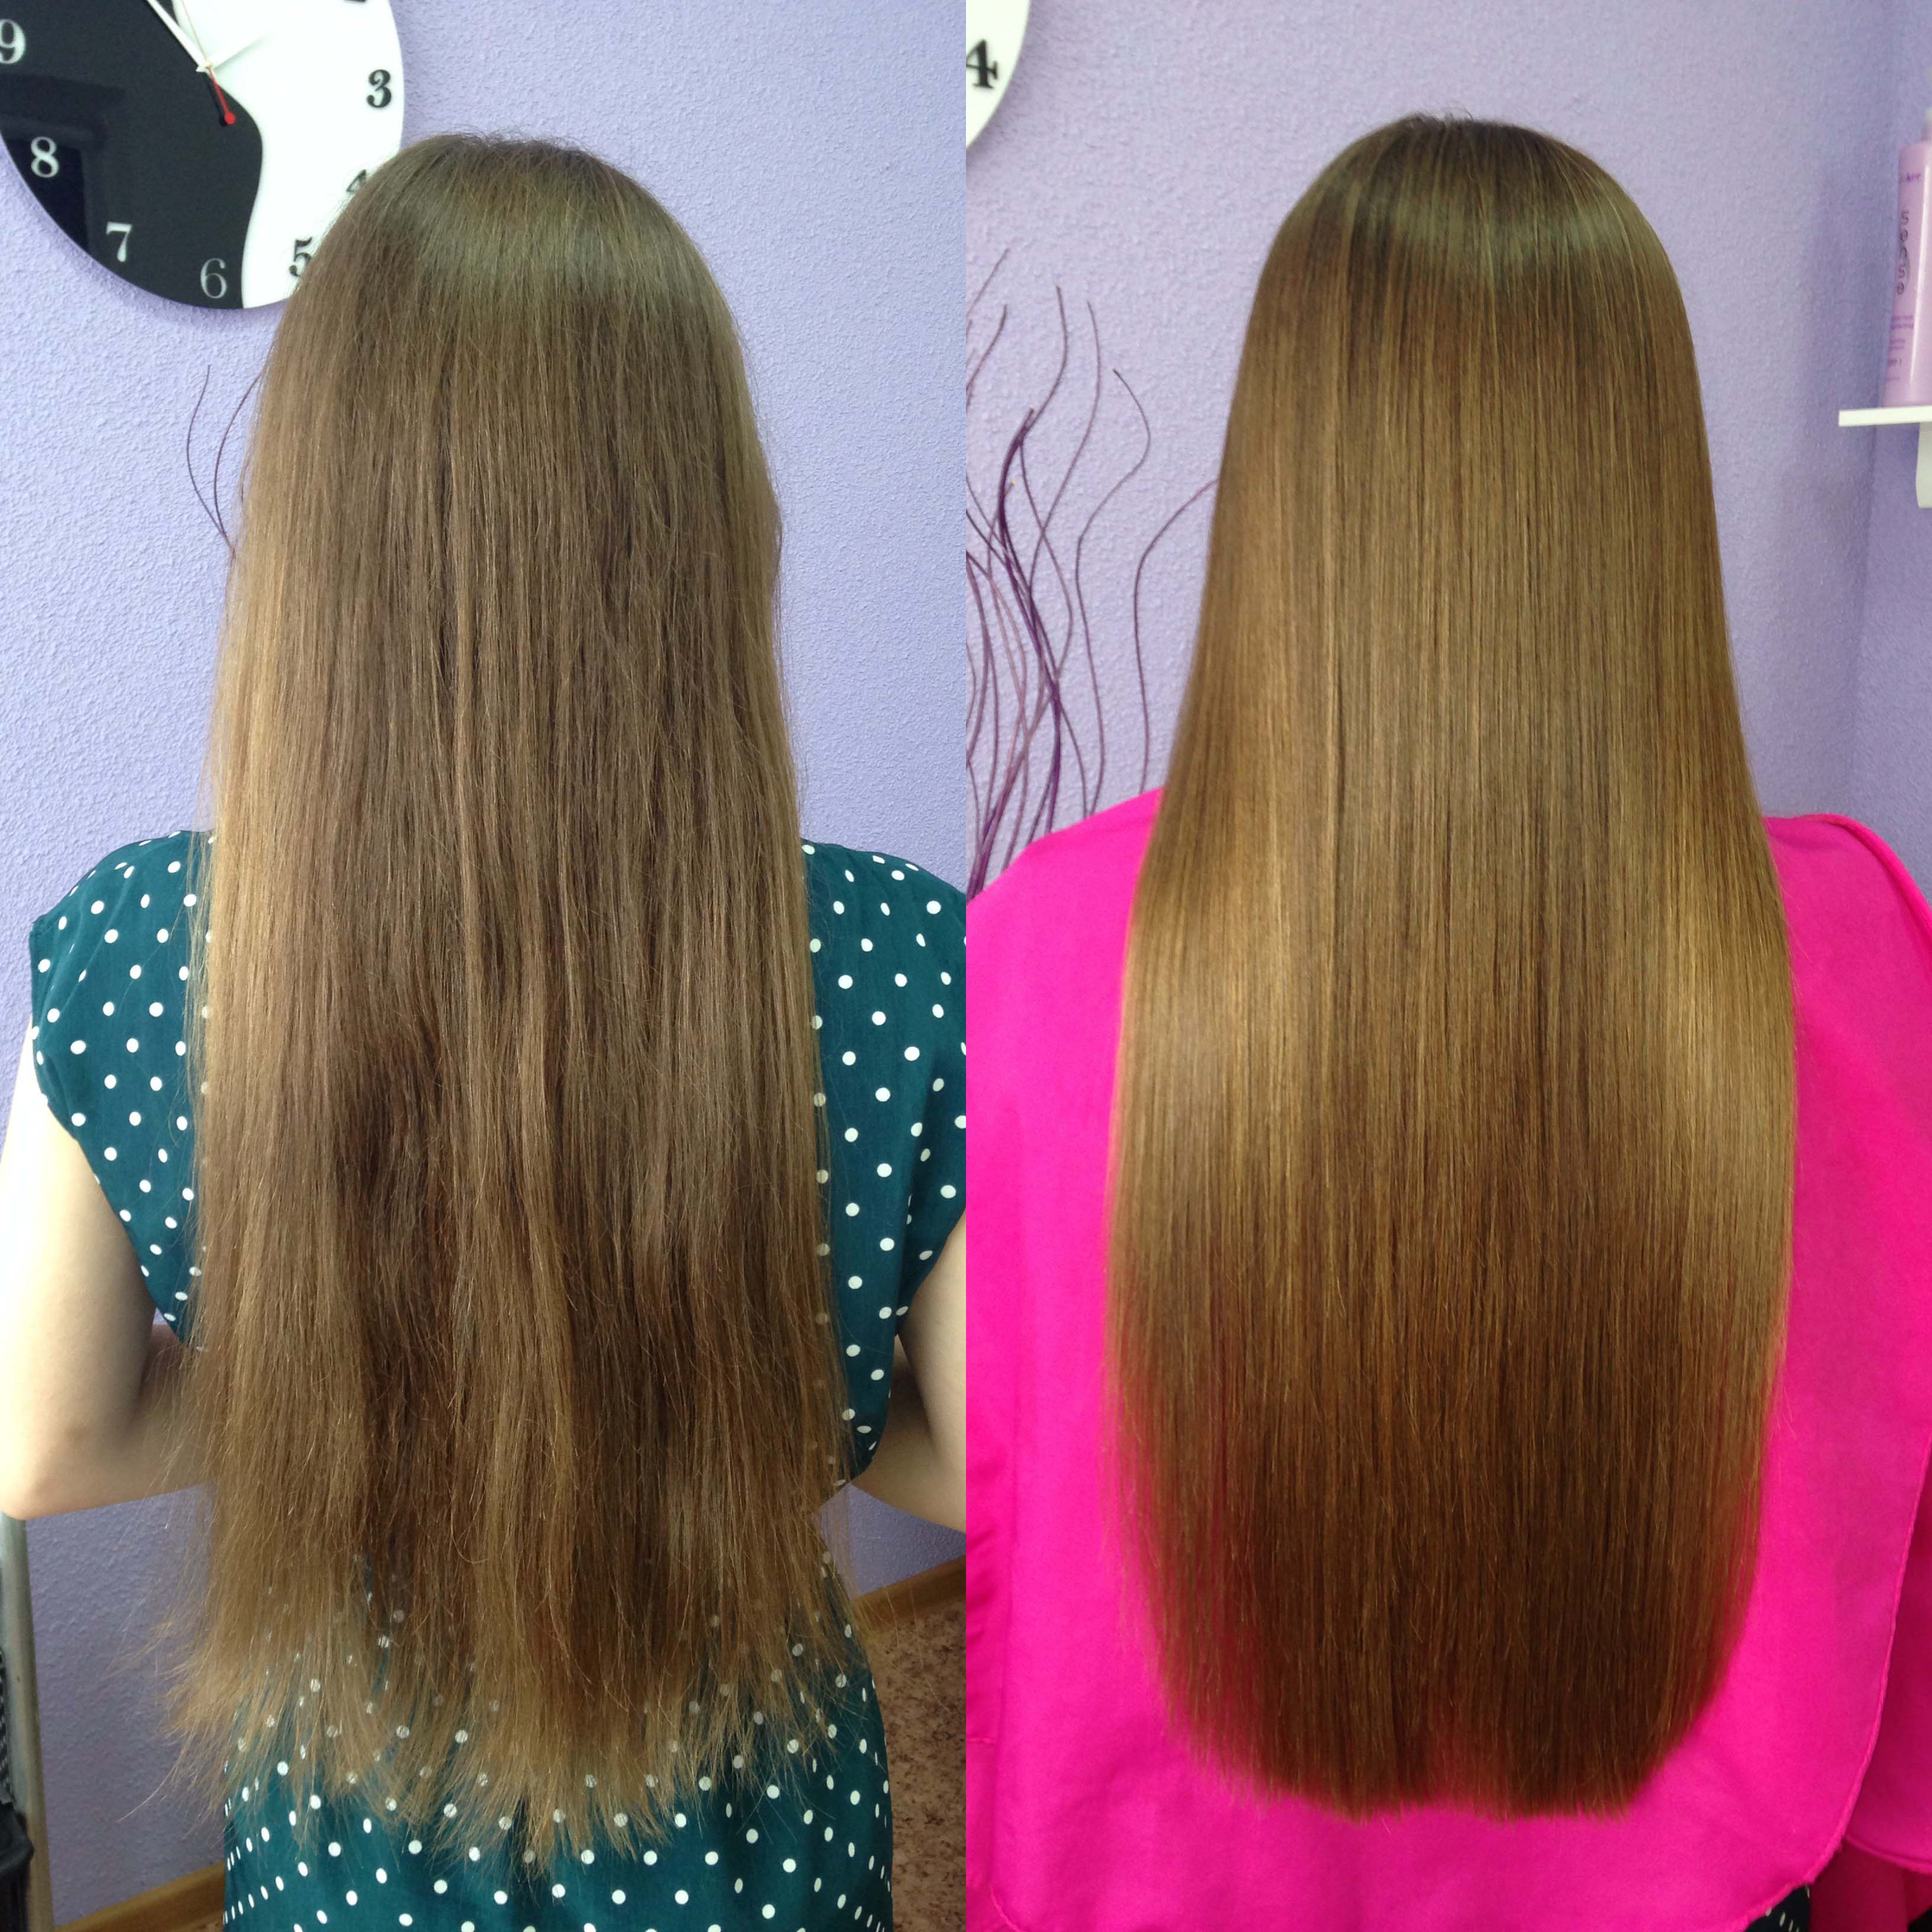 Реконструкция восстановление волос. Химическое выпрямление волос. Реконструкция волос. Волосы до после. Реконструкция волос до и после.